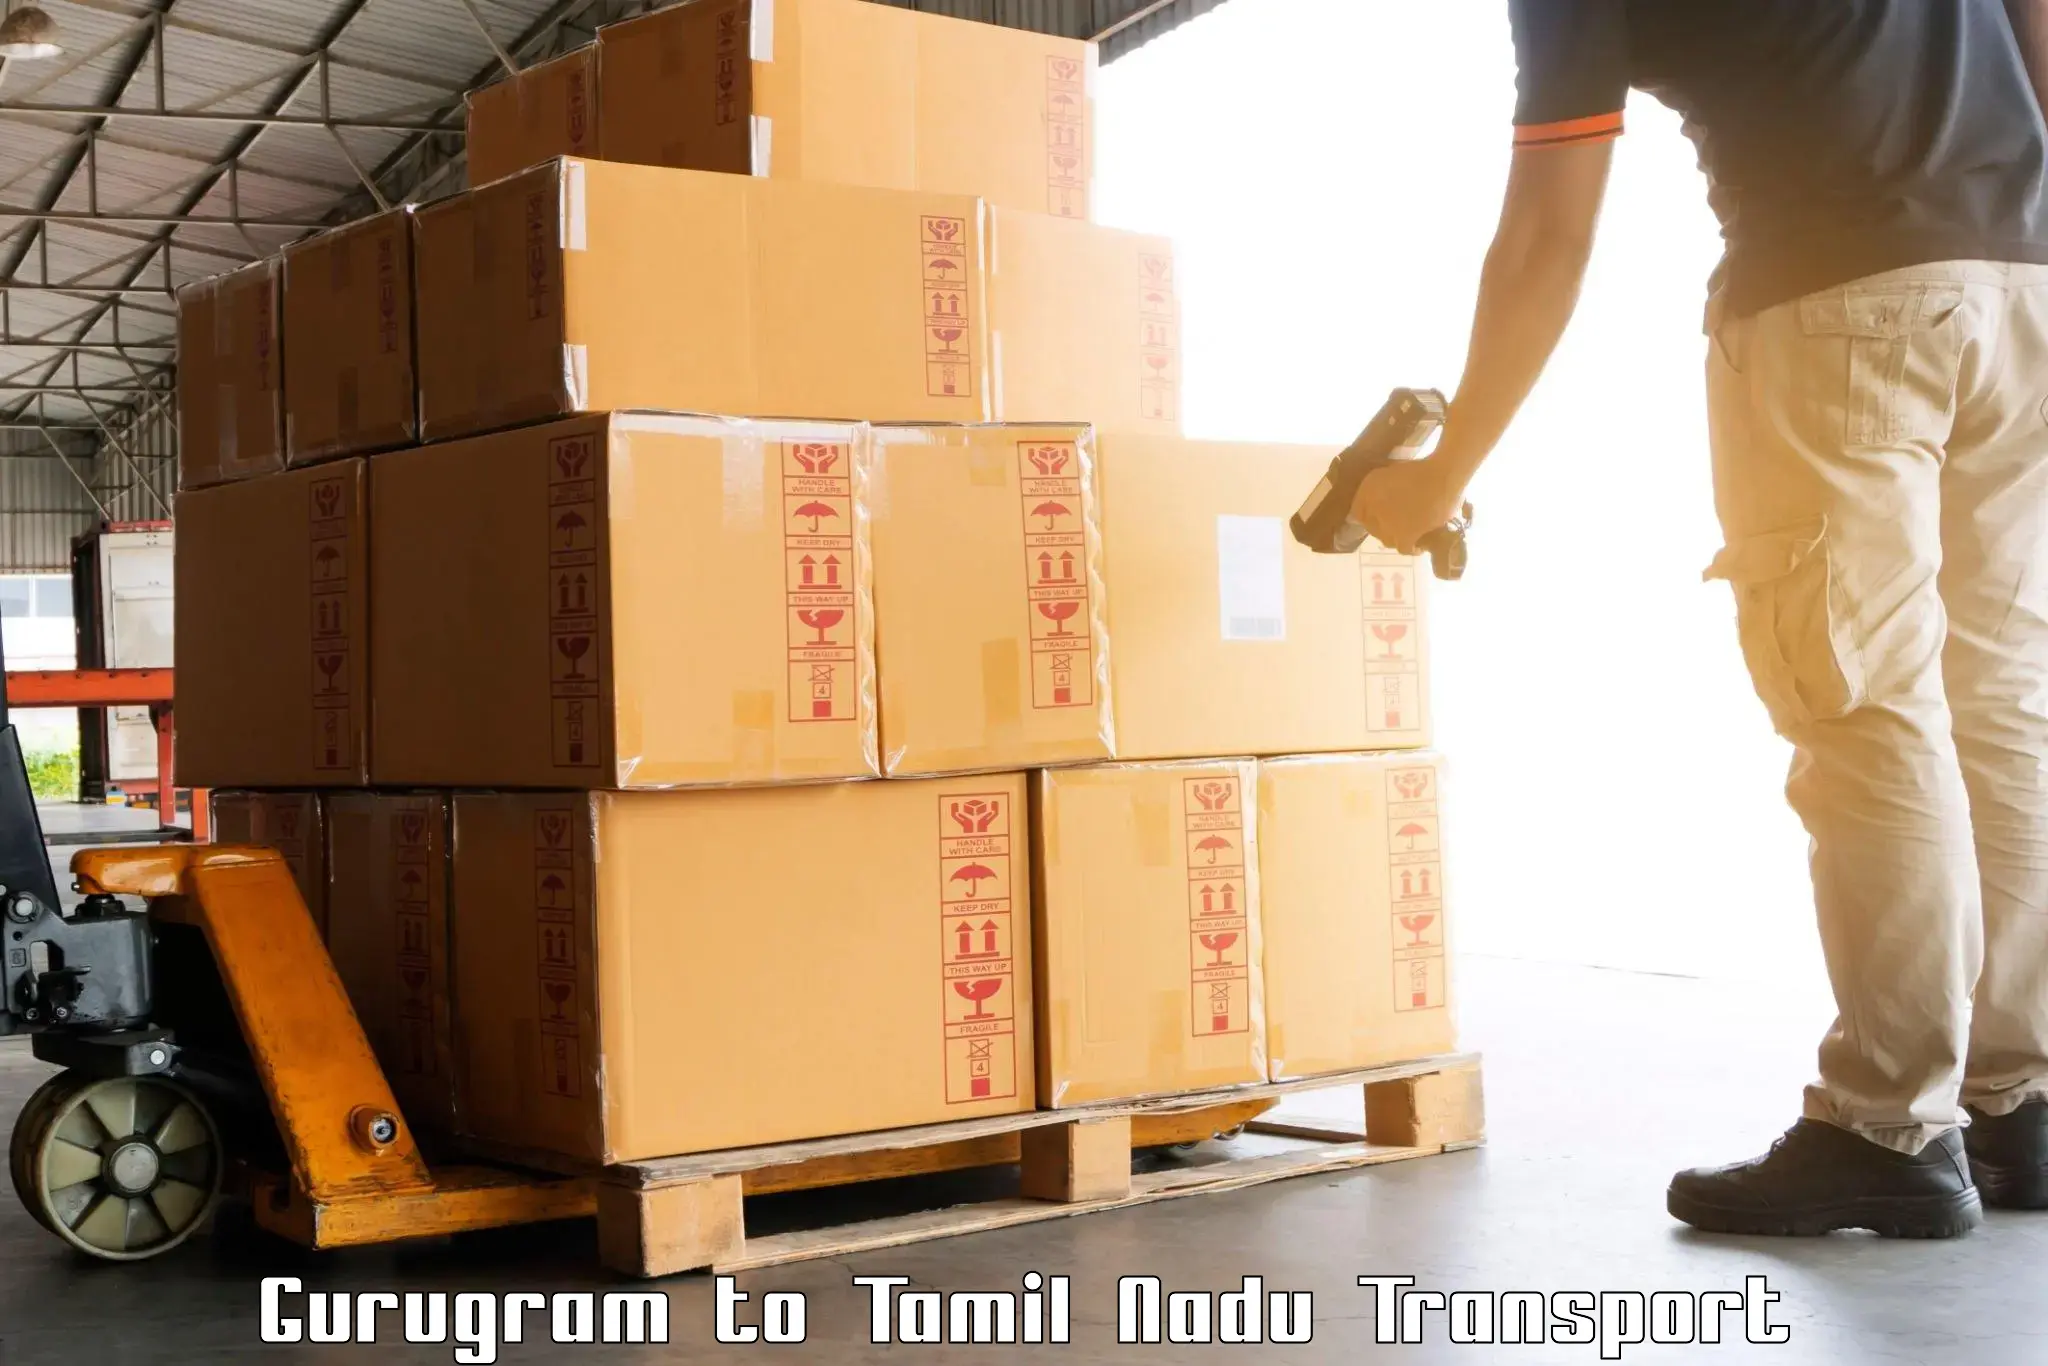 Delivery service Gurugram to Coonoor